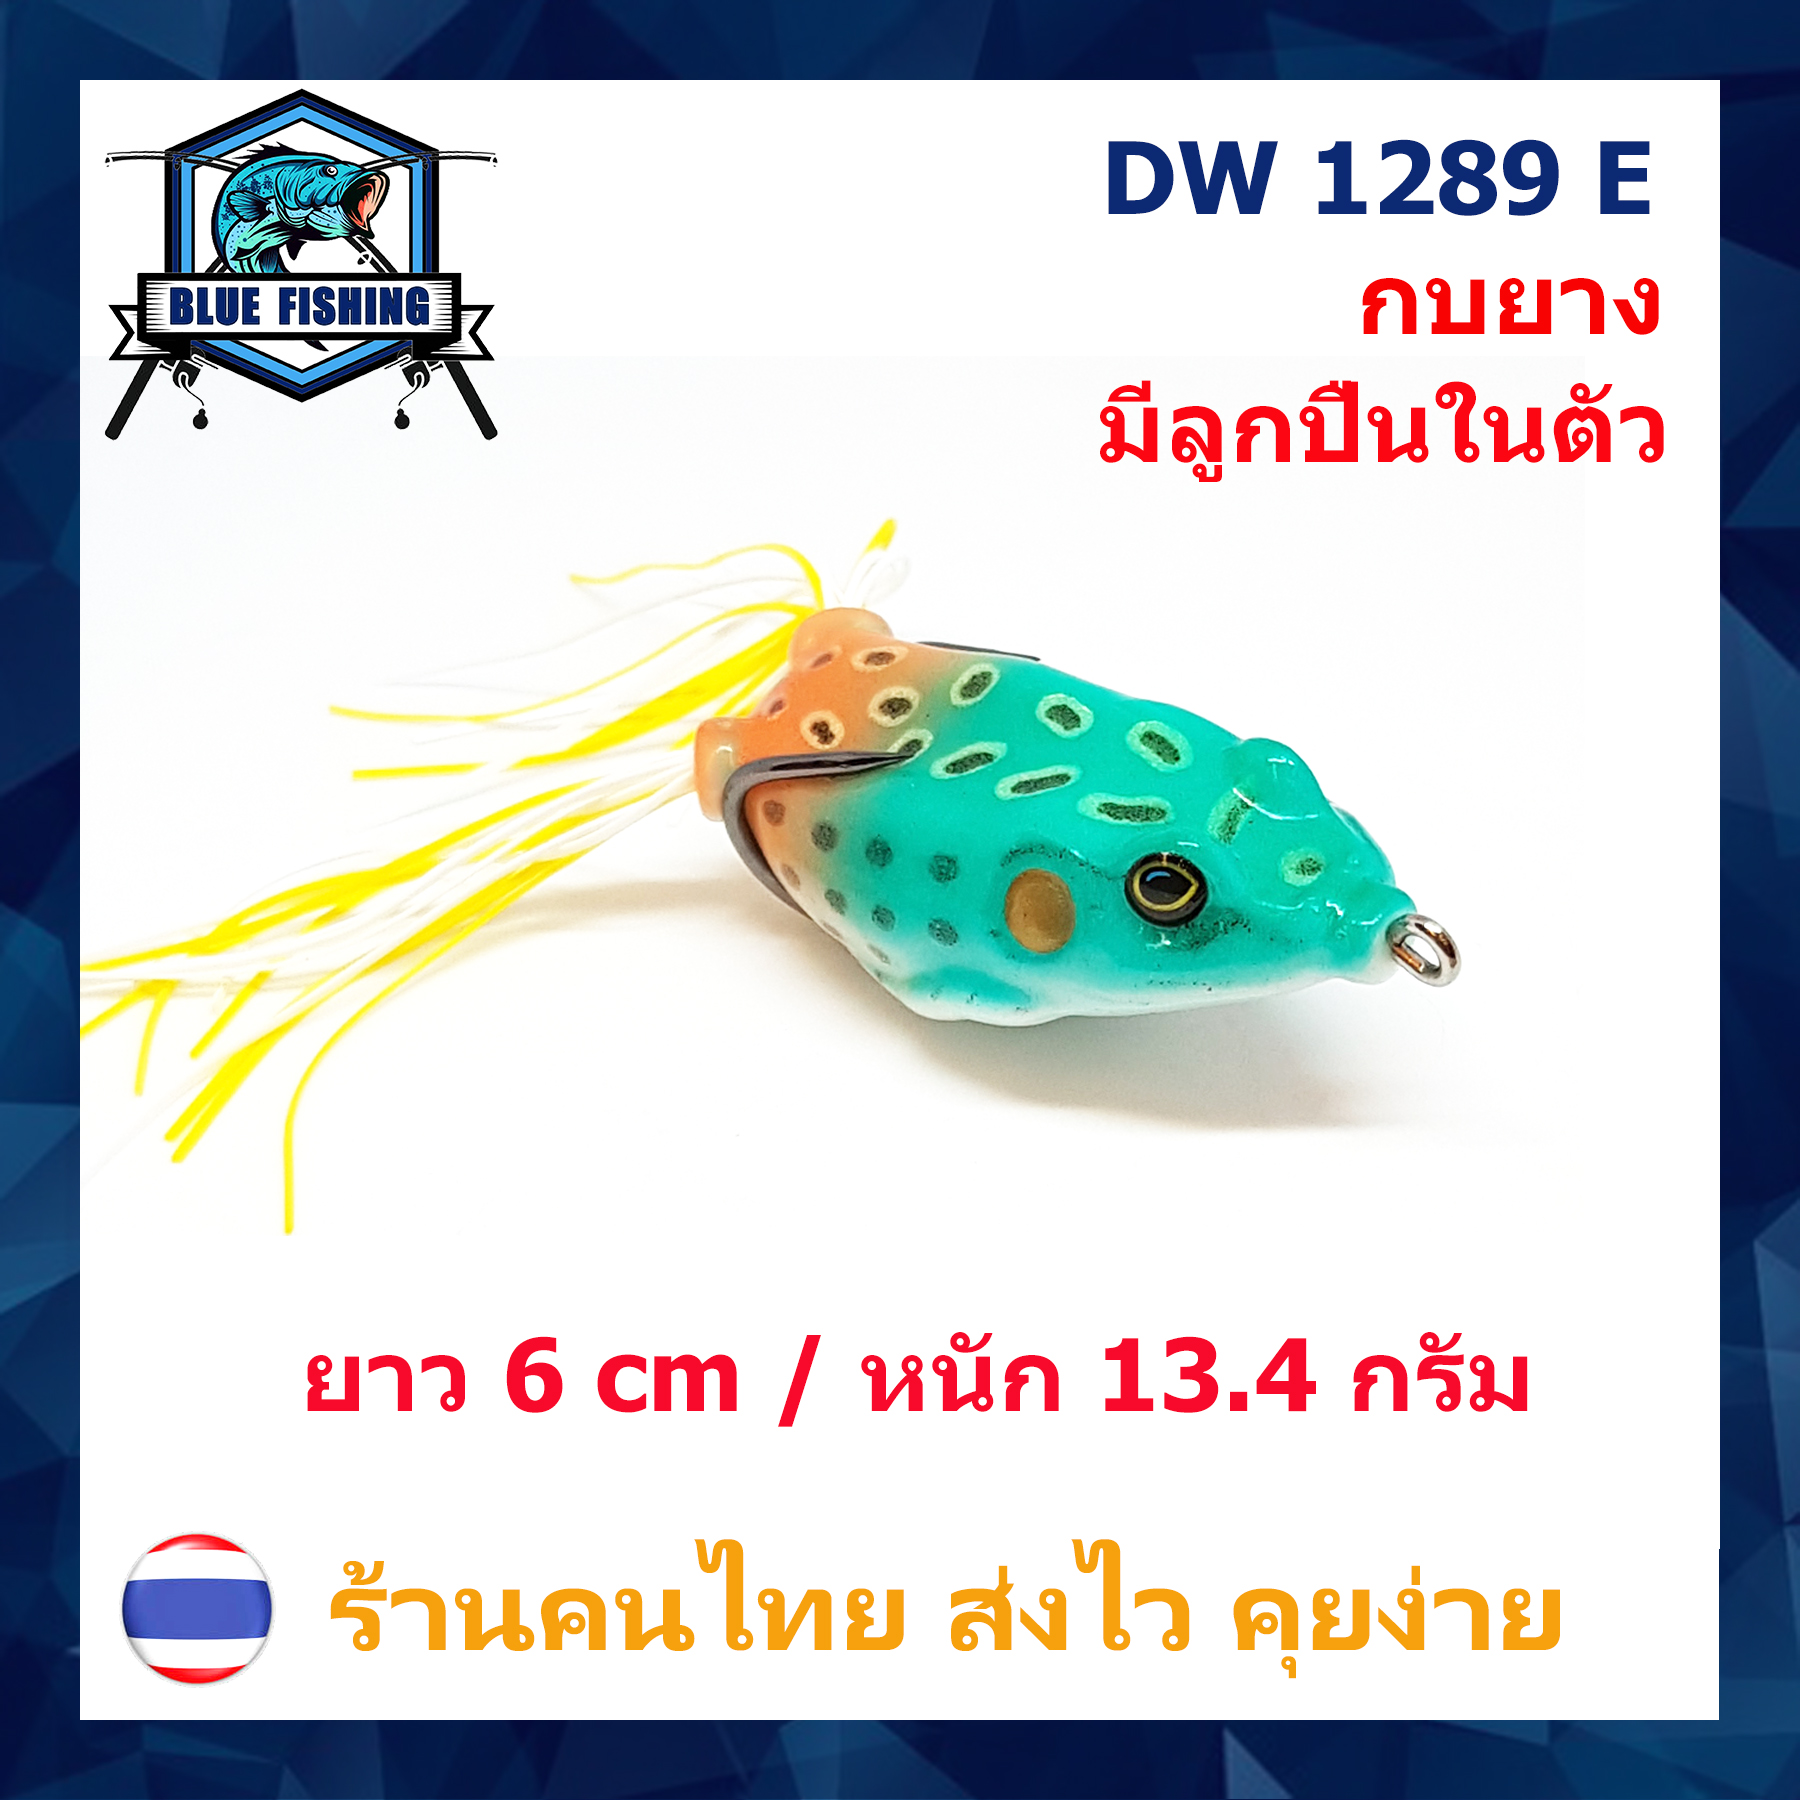 บลู ฟิชชิ่ง [ Blue Fishing ] ( ส่งเร็ว มีสินค้าพร้อมส่ง ) เหยื่อปลอม เหยื่อตกปลา กบยาง กันสวะ มีลูกปืนข้างใน ยาว 6 CM หนัก 13.4 กรัม DW 1289